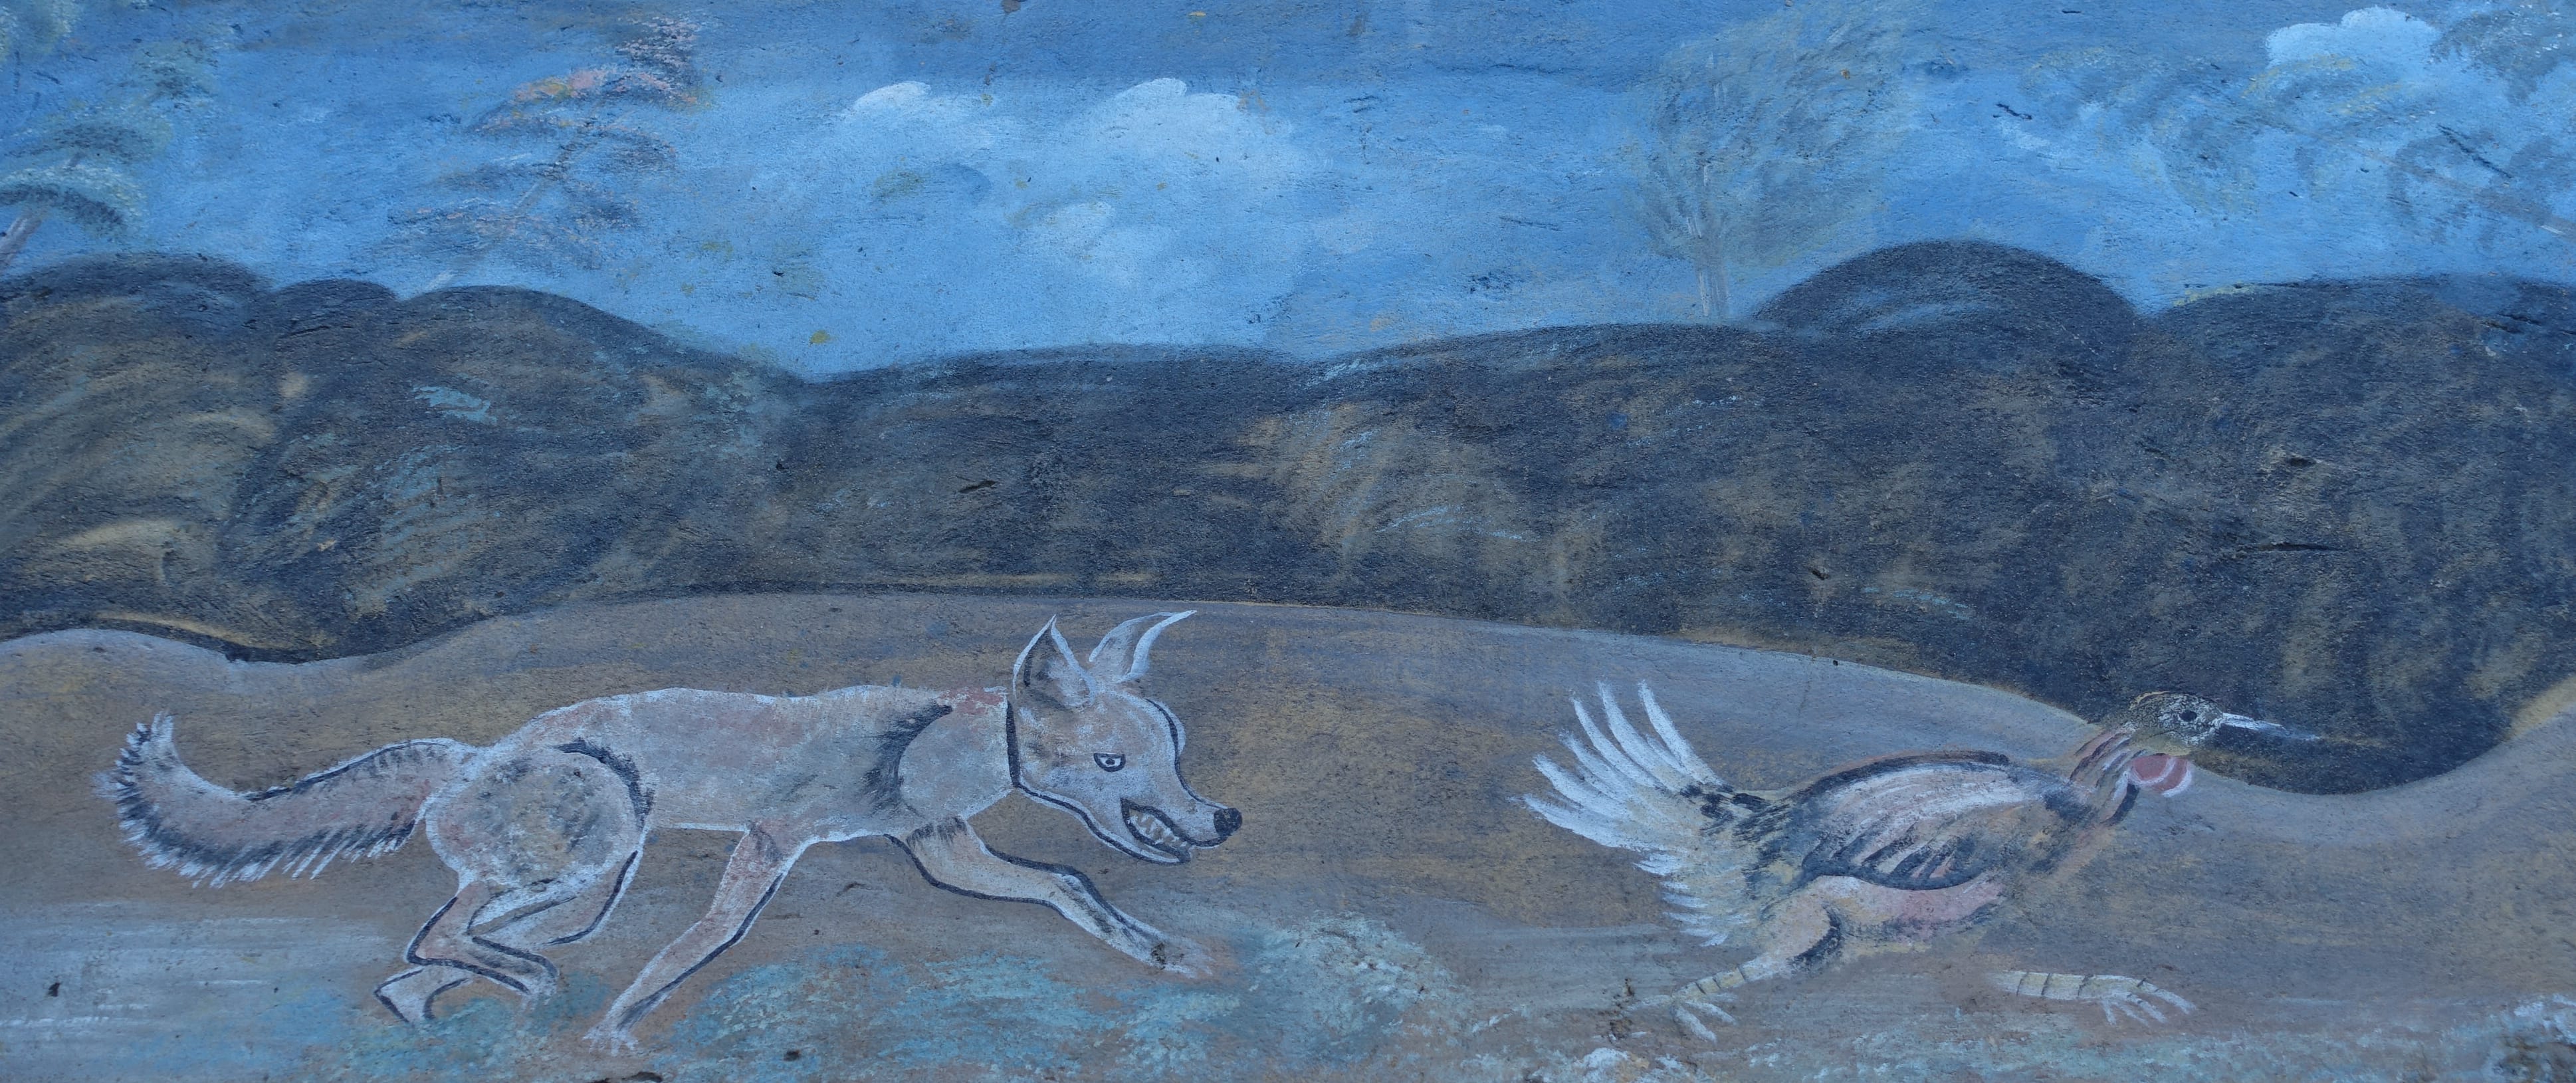 Mural on Paso del Coyote, near the Guatemalan border. Ciudad Hidalgo, México. Photo by Diana Taylor. 